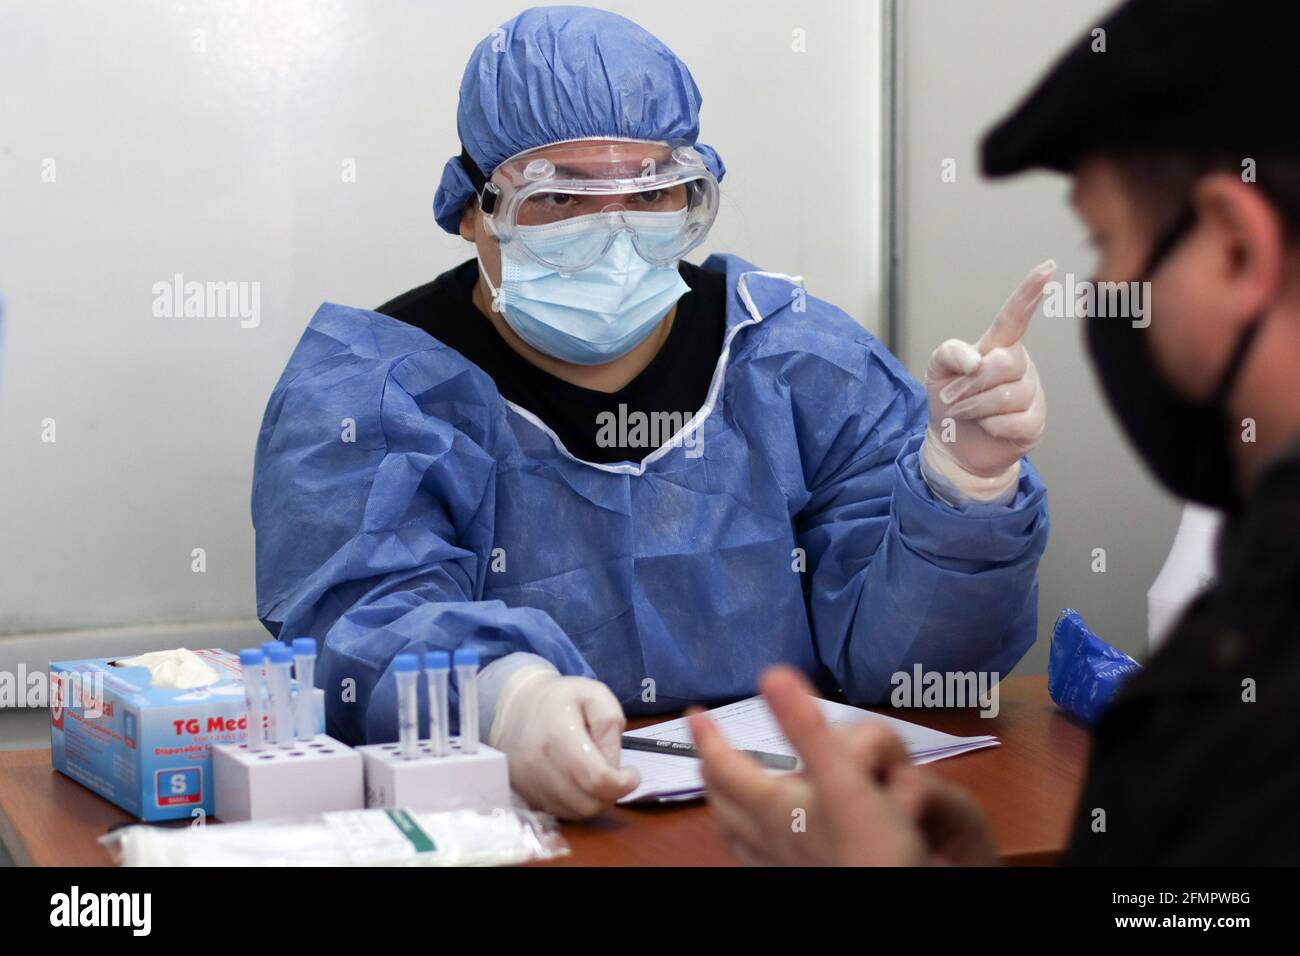 BUENOS AIRES, 11.05.2021: Gli infermieri eseguono il tampone per i test di Coronavirus in un centro Detectar nel contesto della seconda ondata di infezioni. Foto Stock